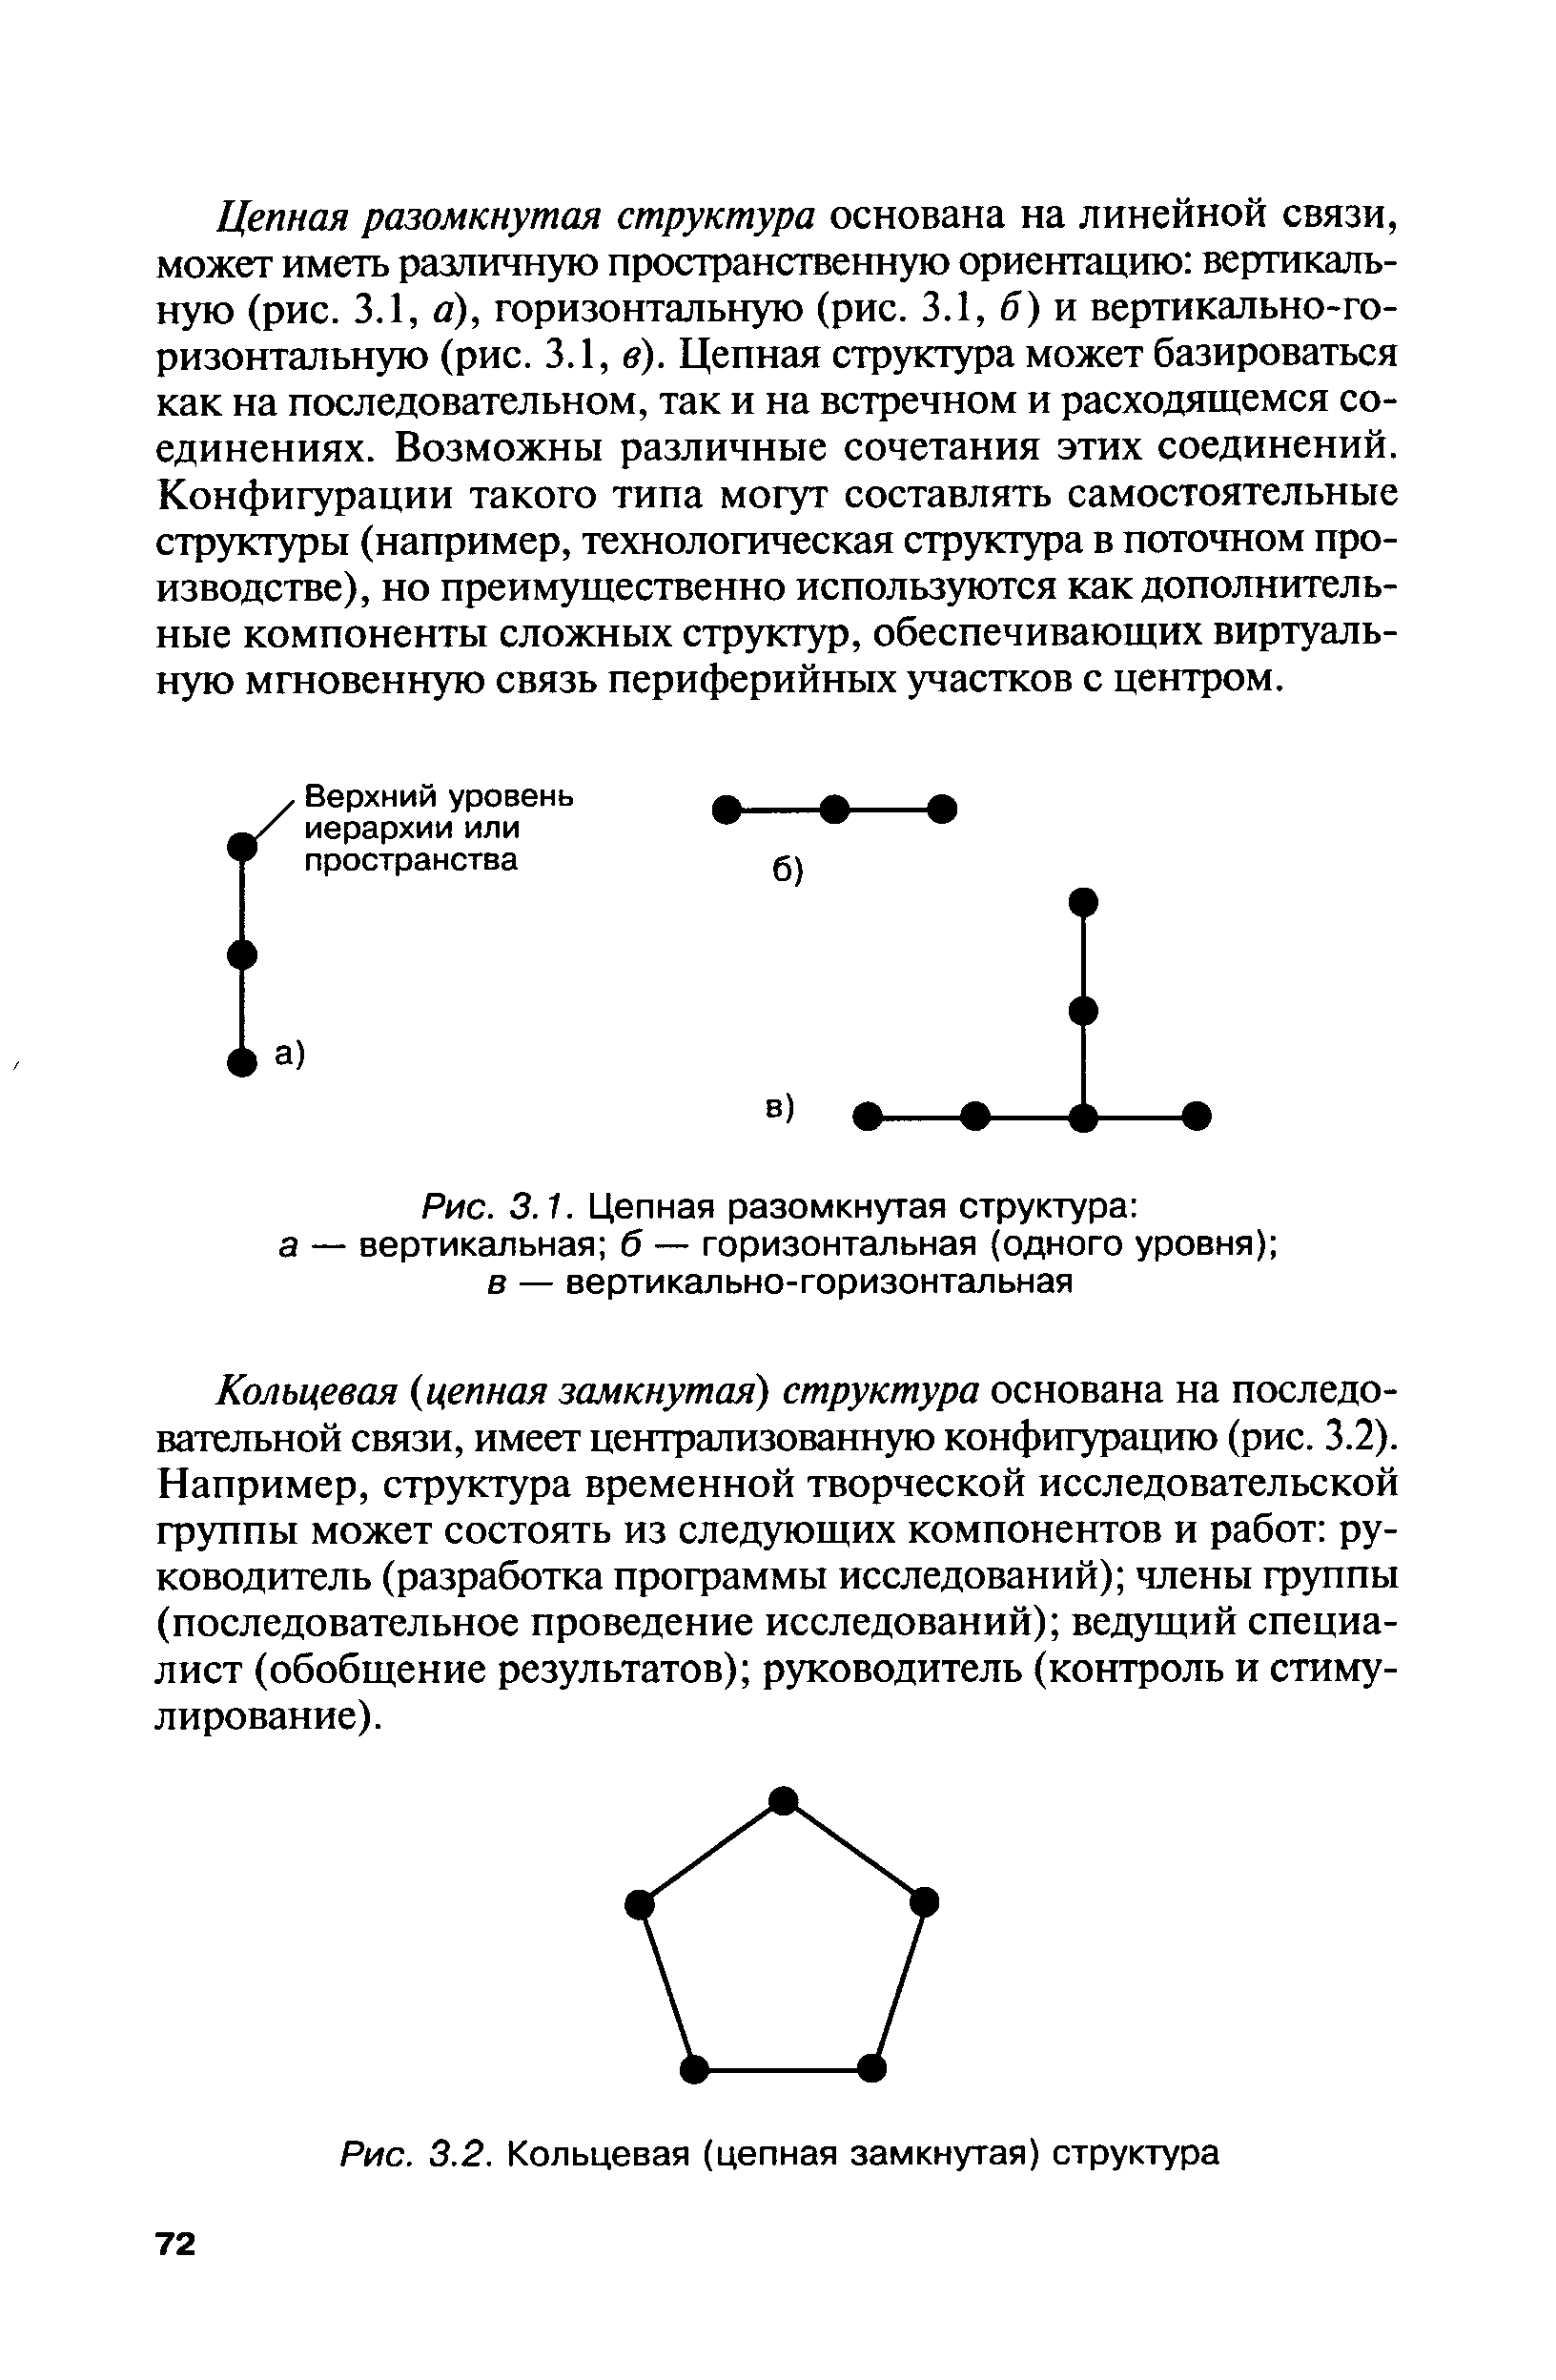 Цепная разомкнутая структура основана на линейной связи, может иметь различную пространственную ориентацию вертикальную (рис. 3.1, а), горизонтальную (рис. 3.1, б) и вертикально-горизонтальную (рис. 3.1, в). Цепная структура может базироваться как на последовательном, так и на встречном и расходящемся соединениях. Возможны различные сочетания этих соединений. Конфигурации такого типа могут составлять самостоятельные структуры (например, технологическая структура в поточном производстве), но преимущественно используются как дополнительные компоненты сложных структур, обеспечивающих виртуальную мгновенную связь периферийных участков с центром.
